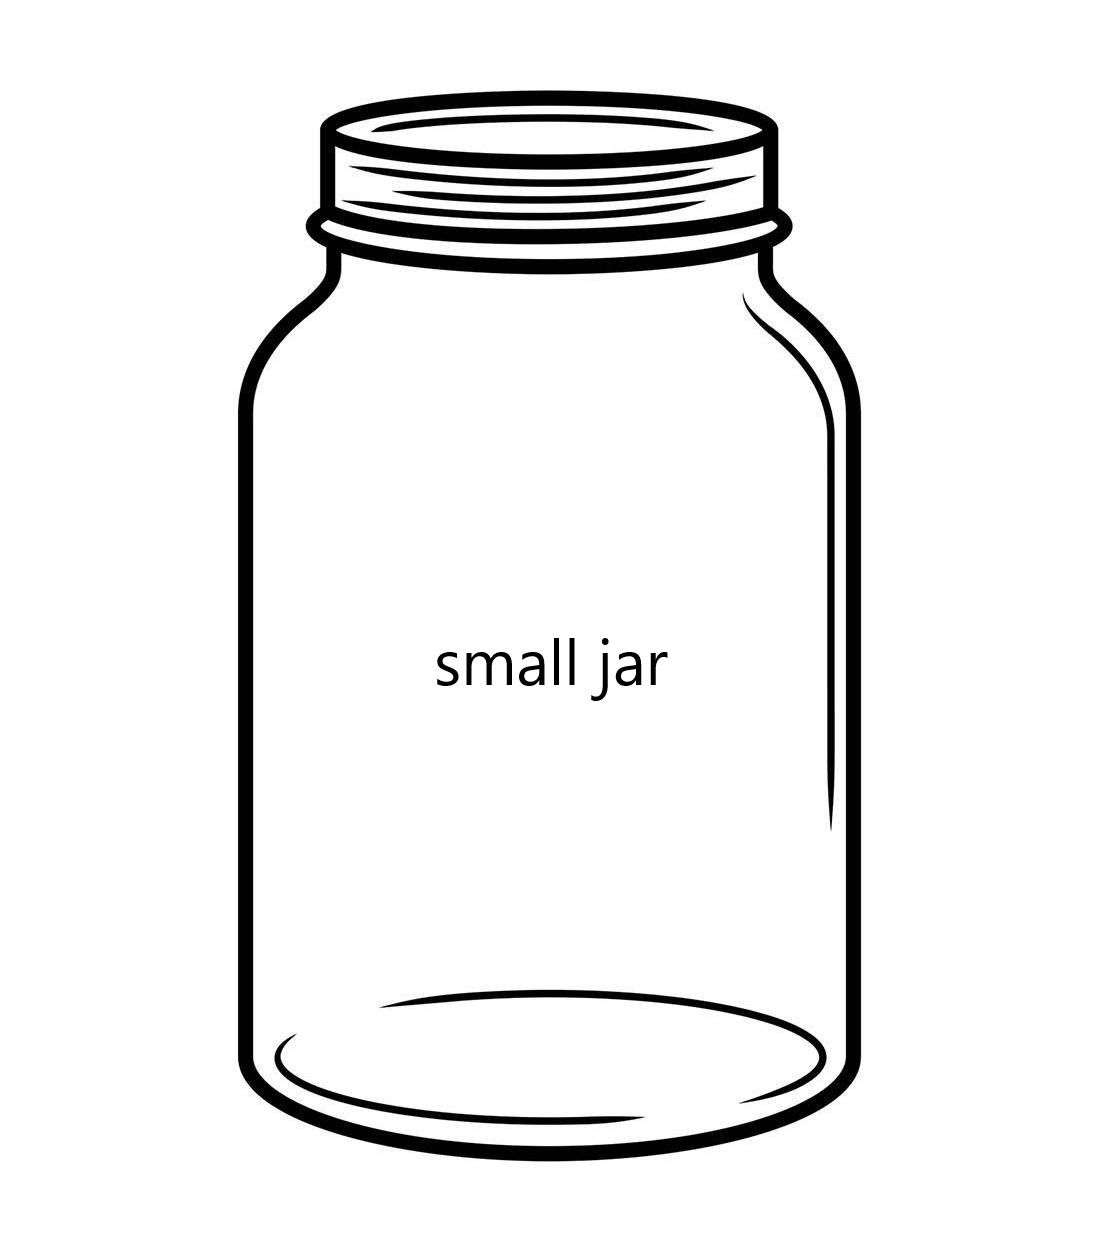 Small jar